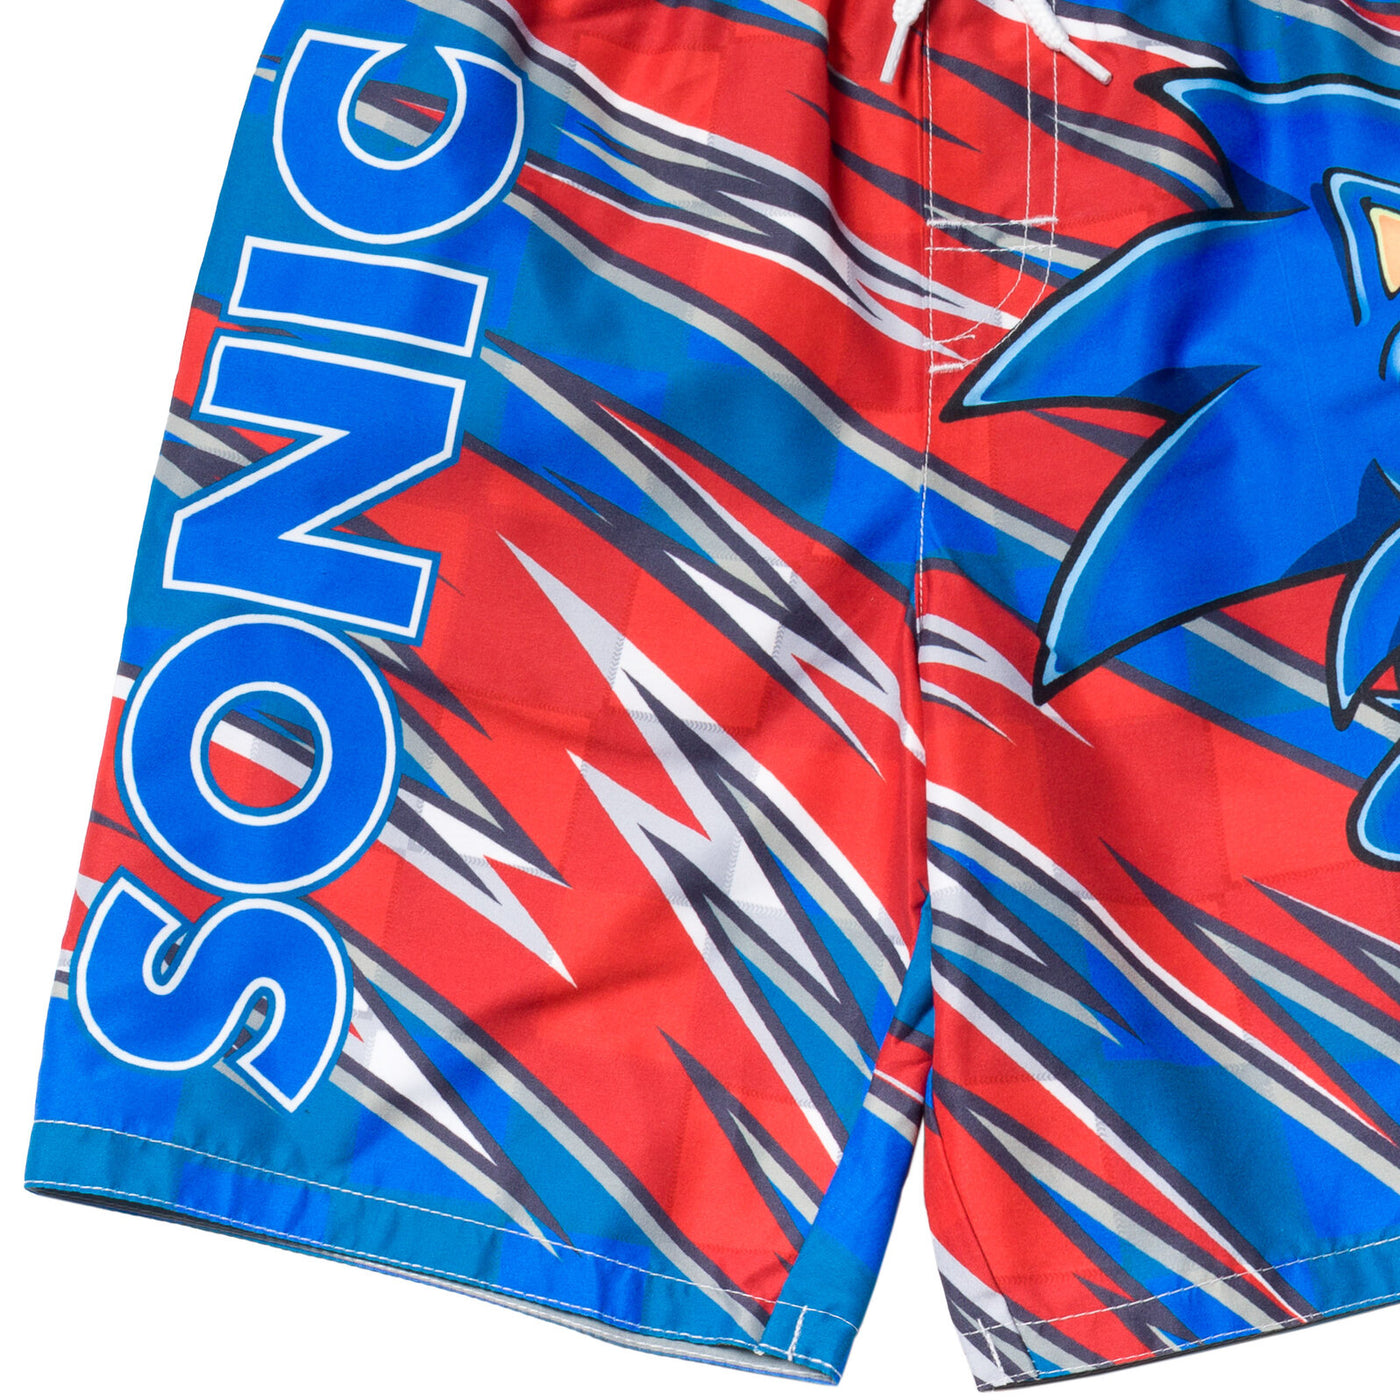 SEGA Sonic the Hedgehog UPF 50+ Swim Trunks Bathing Suit